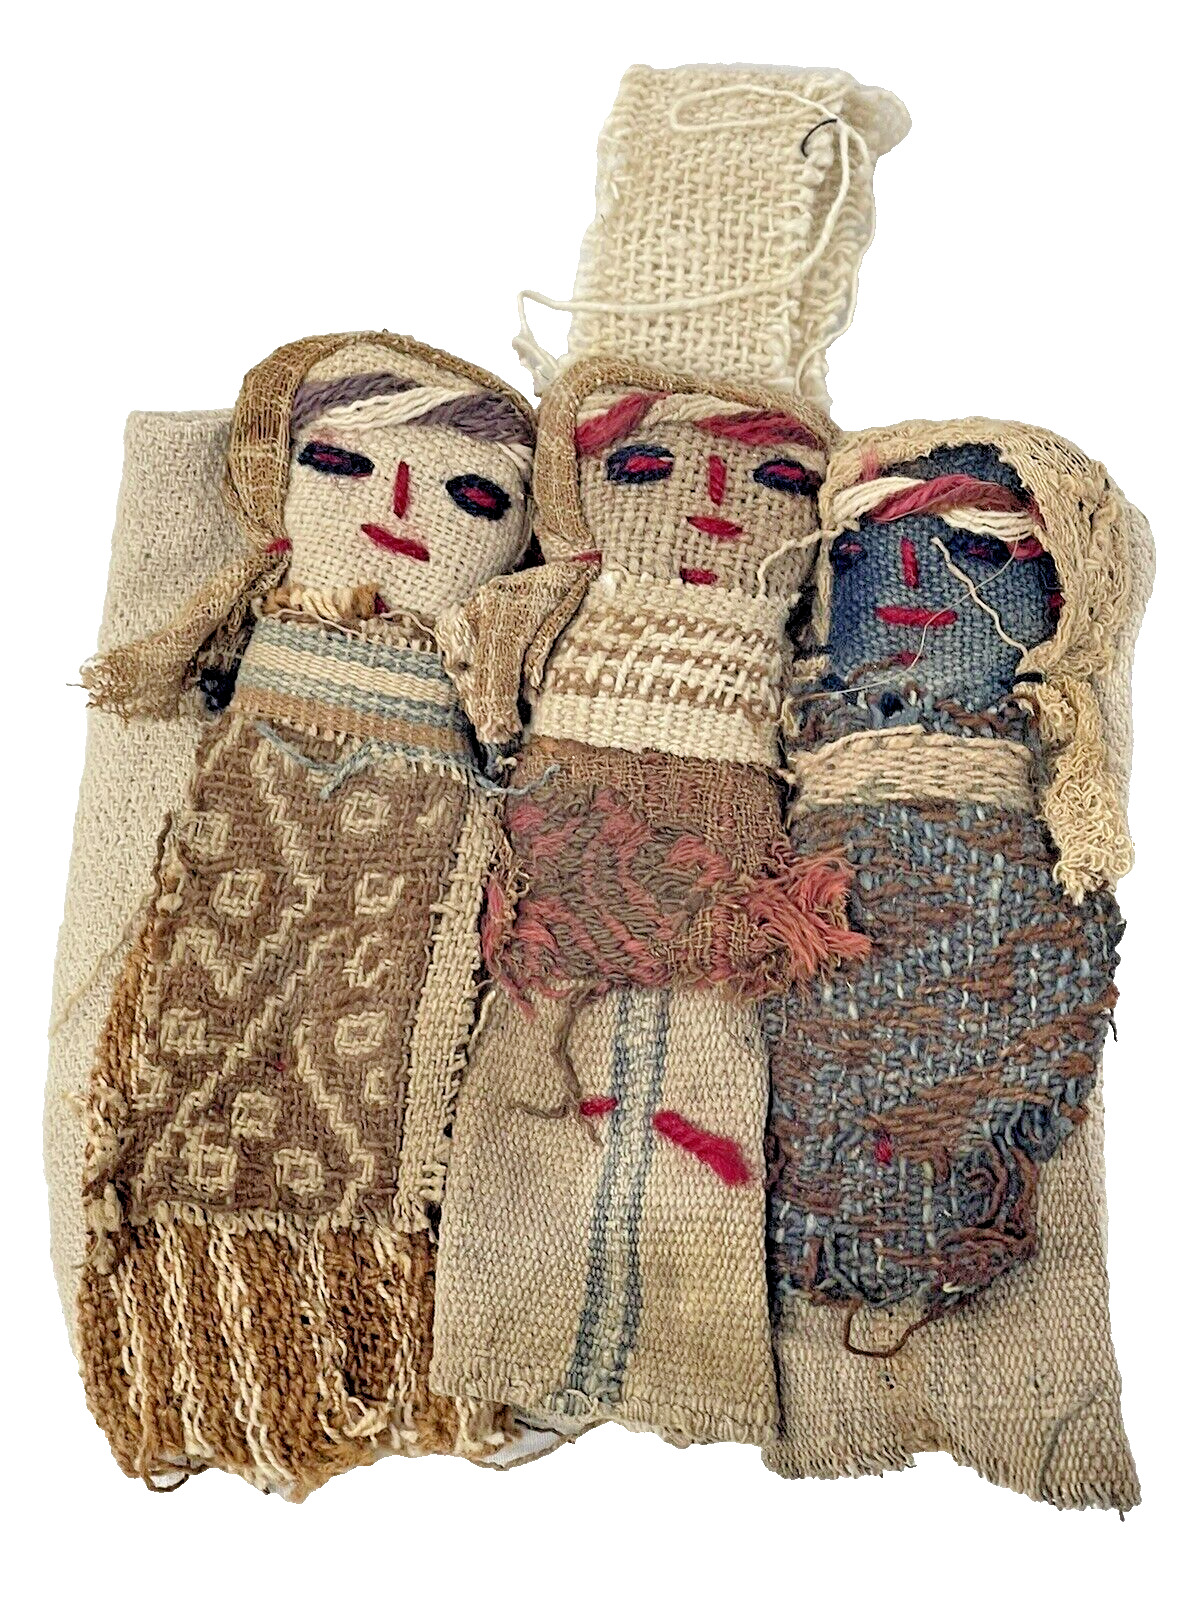 Vintage Chancay Doll Peruvian Culture Antique Textile - READ